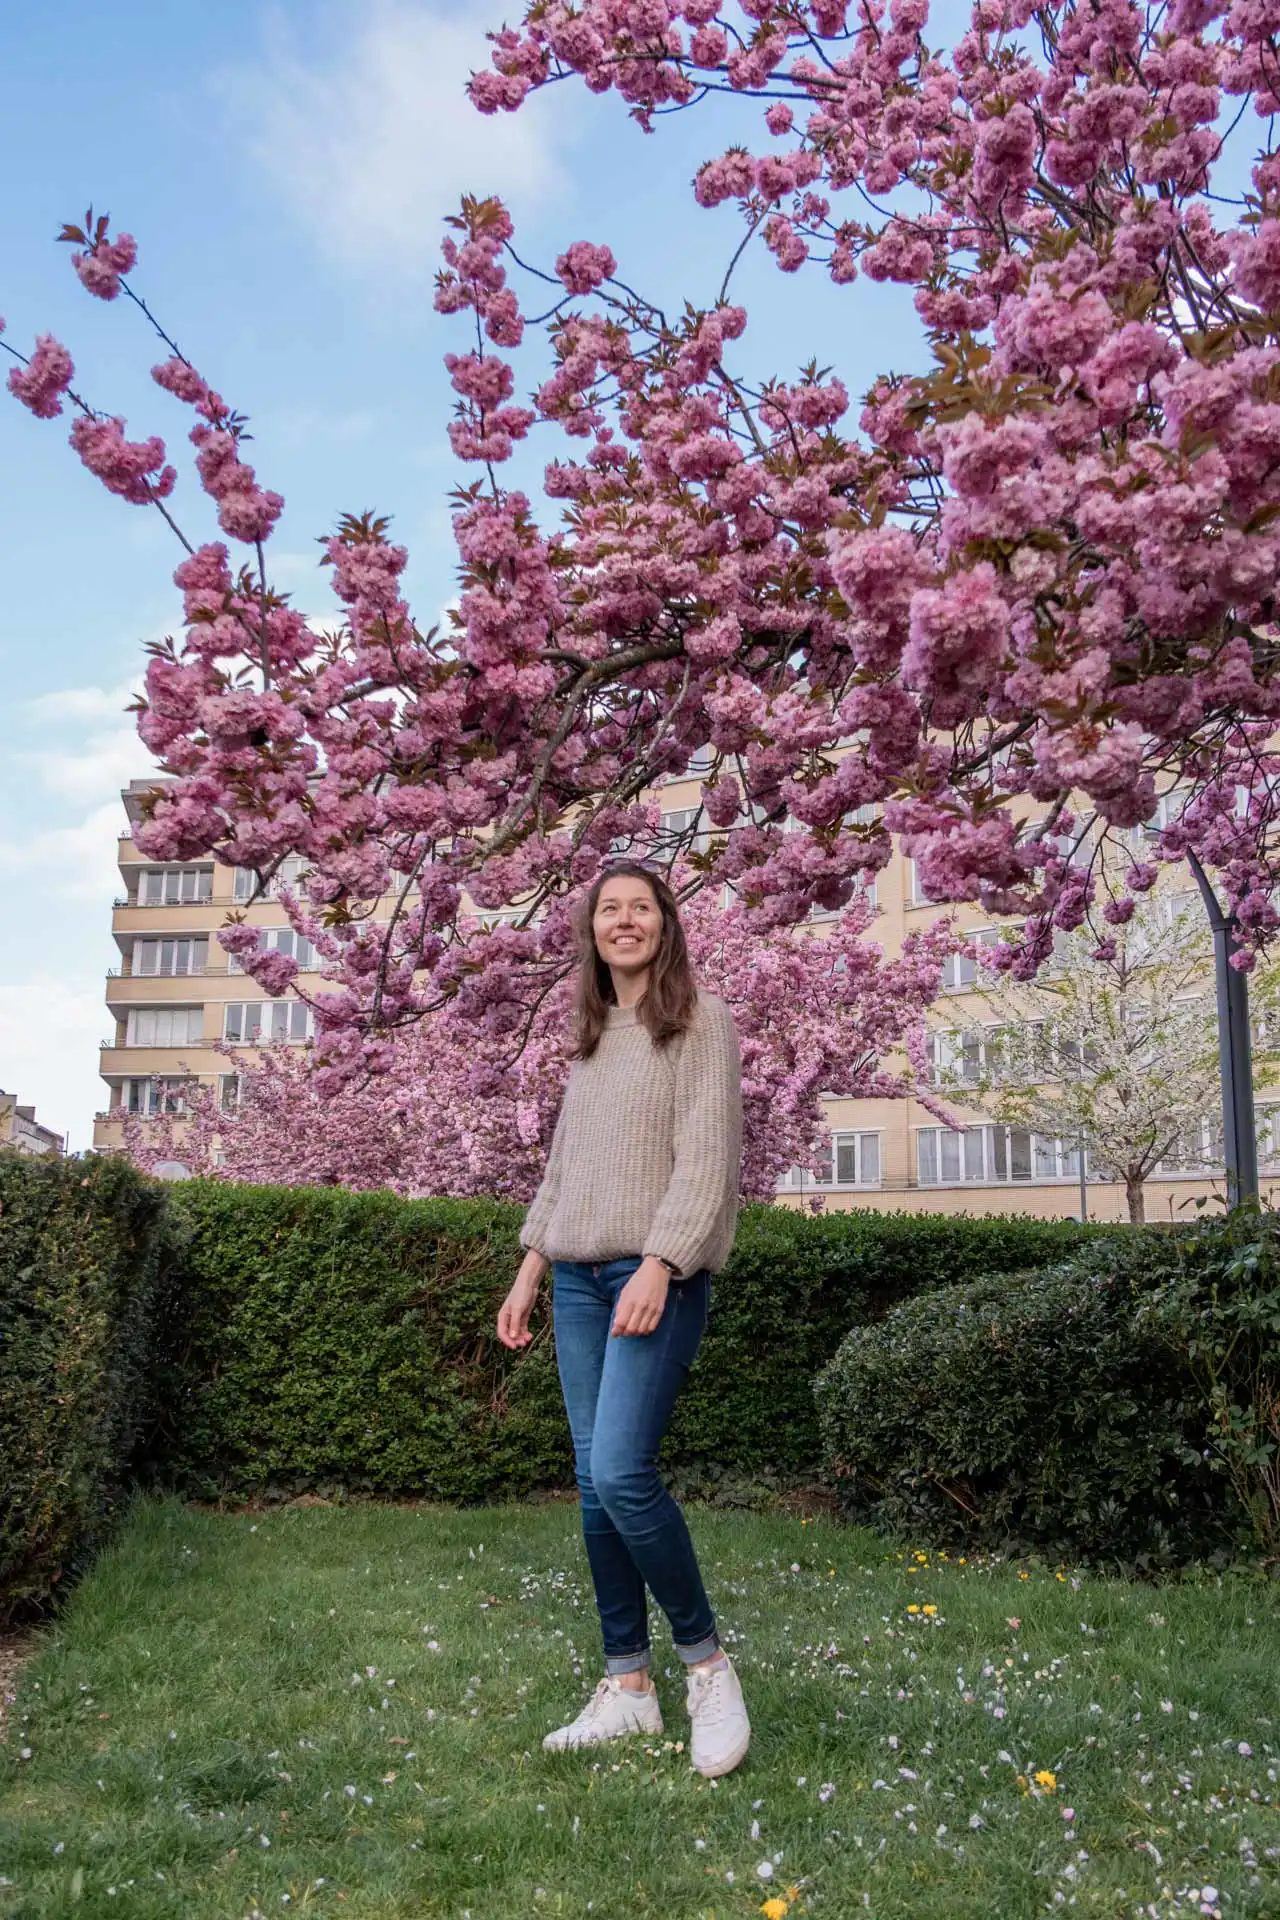 Femme posant devant les cerisiers du Japon en fleurs dans un parc à Bruxelles